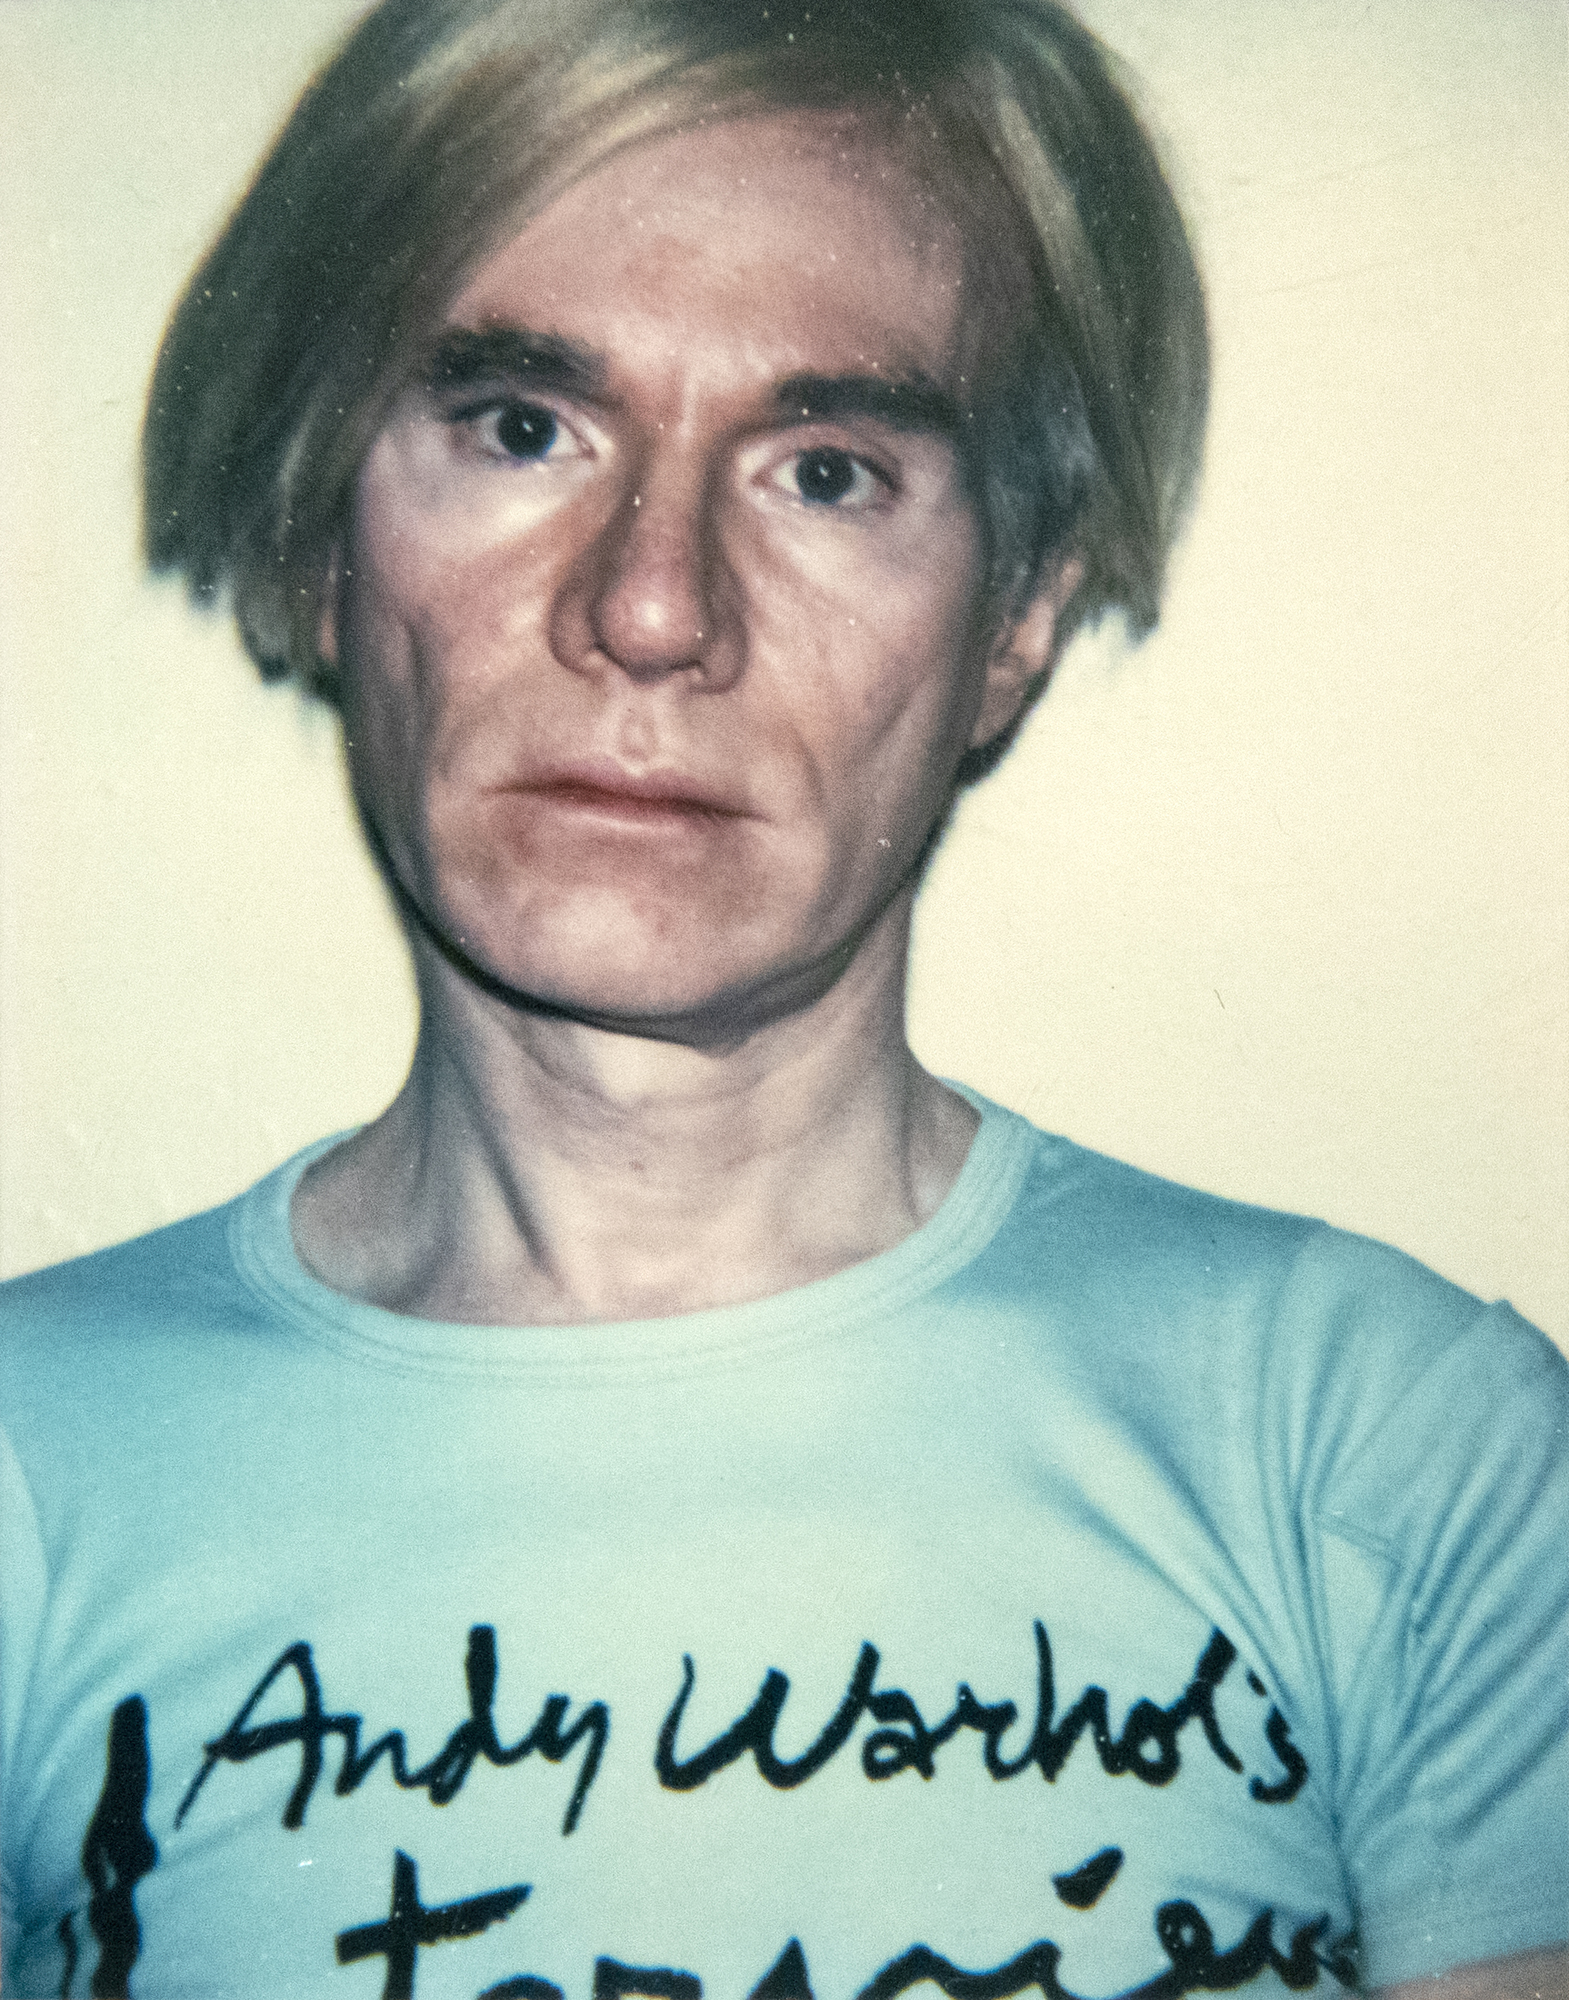 ANDY WARHOL - Autorretrato - Polaroid, Polacolor - 4 1/4 x 3 3/8 in.